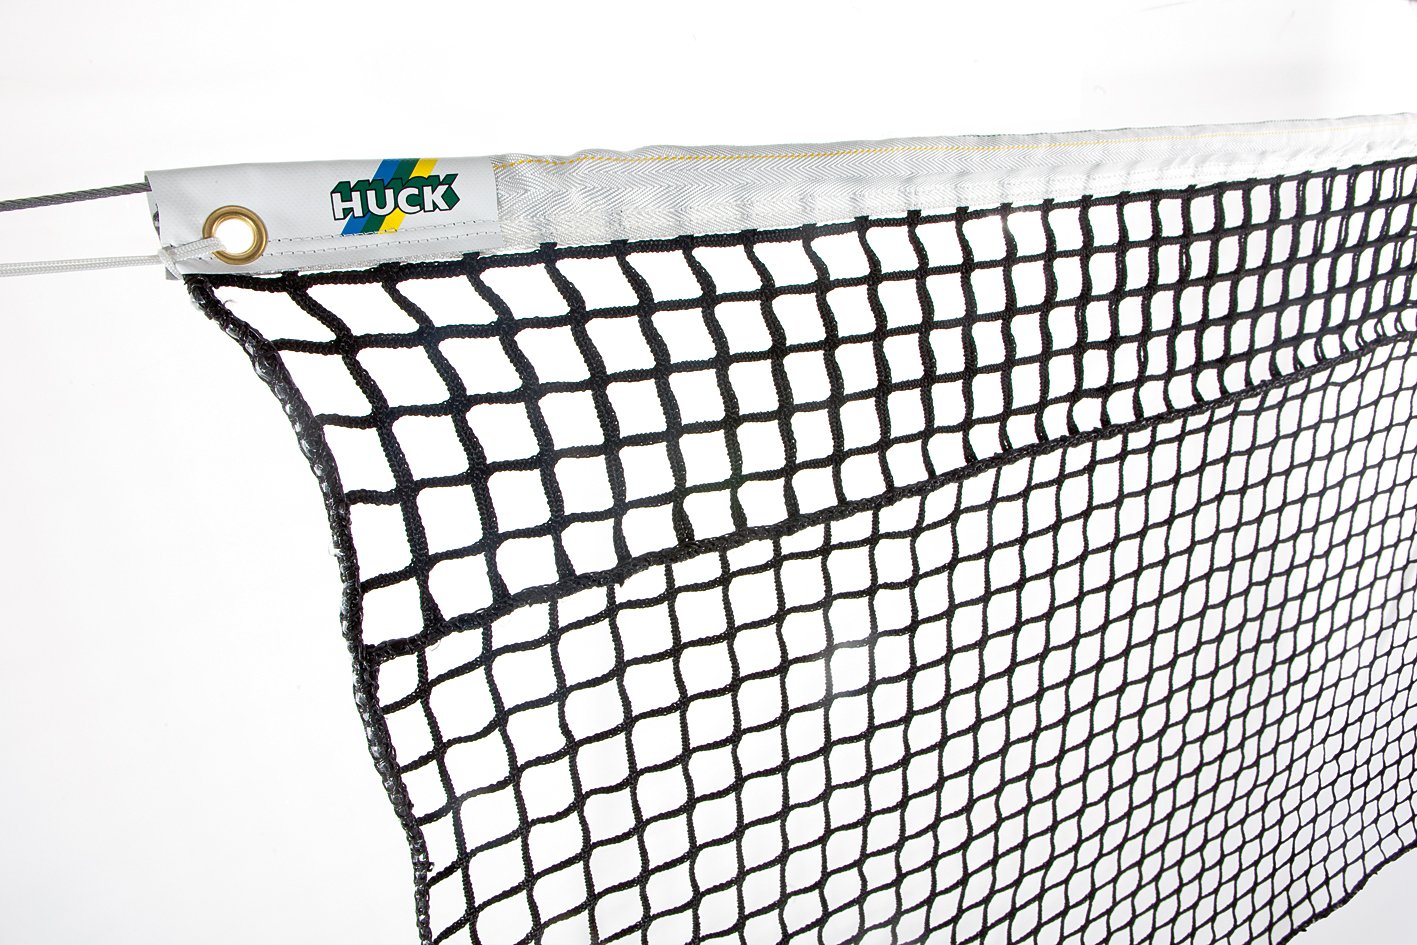 Купить сетку для тенниса. Сетка теннисная TN-20 Universal Huck. Сетка Huck 2нити. Сетка для тенниса ARTENGO 5 метров. Сетка для тенниса 1,5м. Т9638.